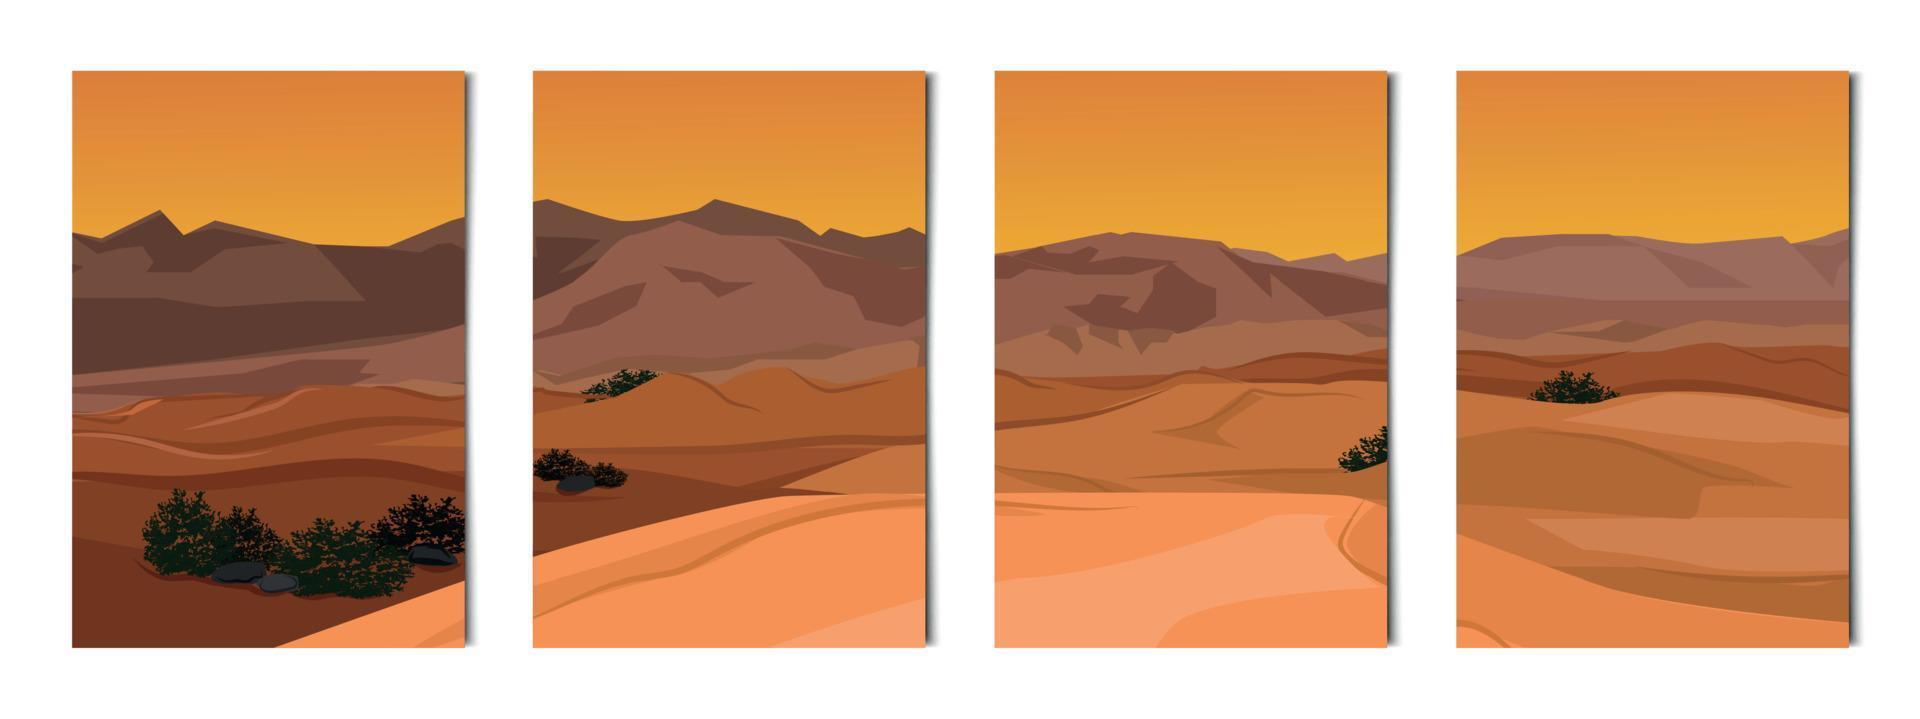 conjunto de 4 pcs paisagem de montanha do deserto - vetor